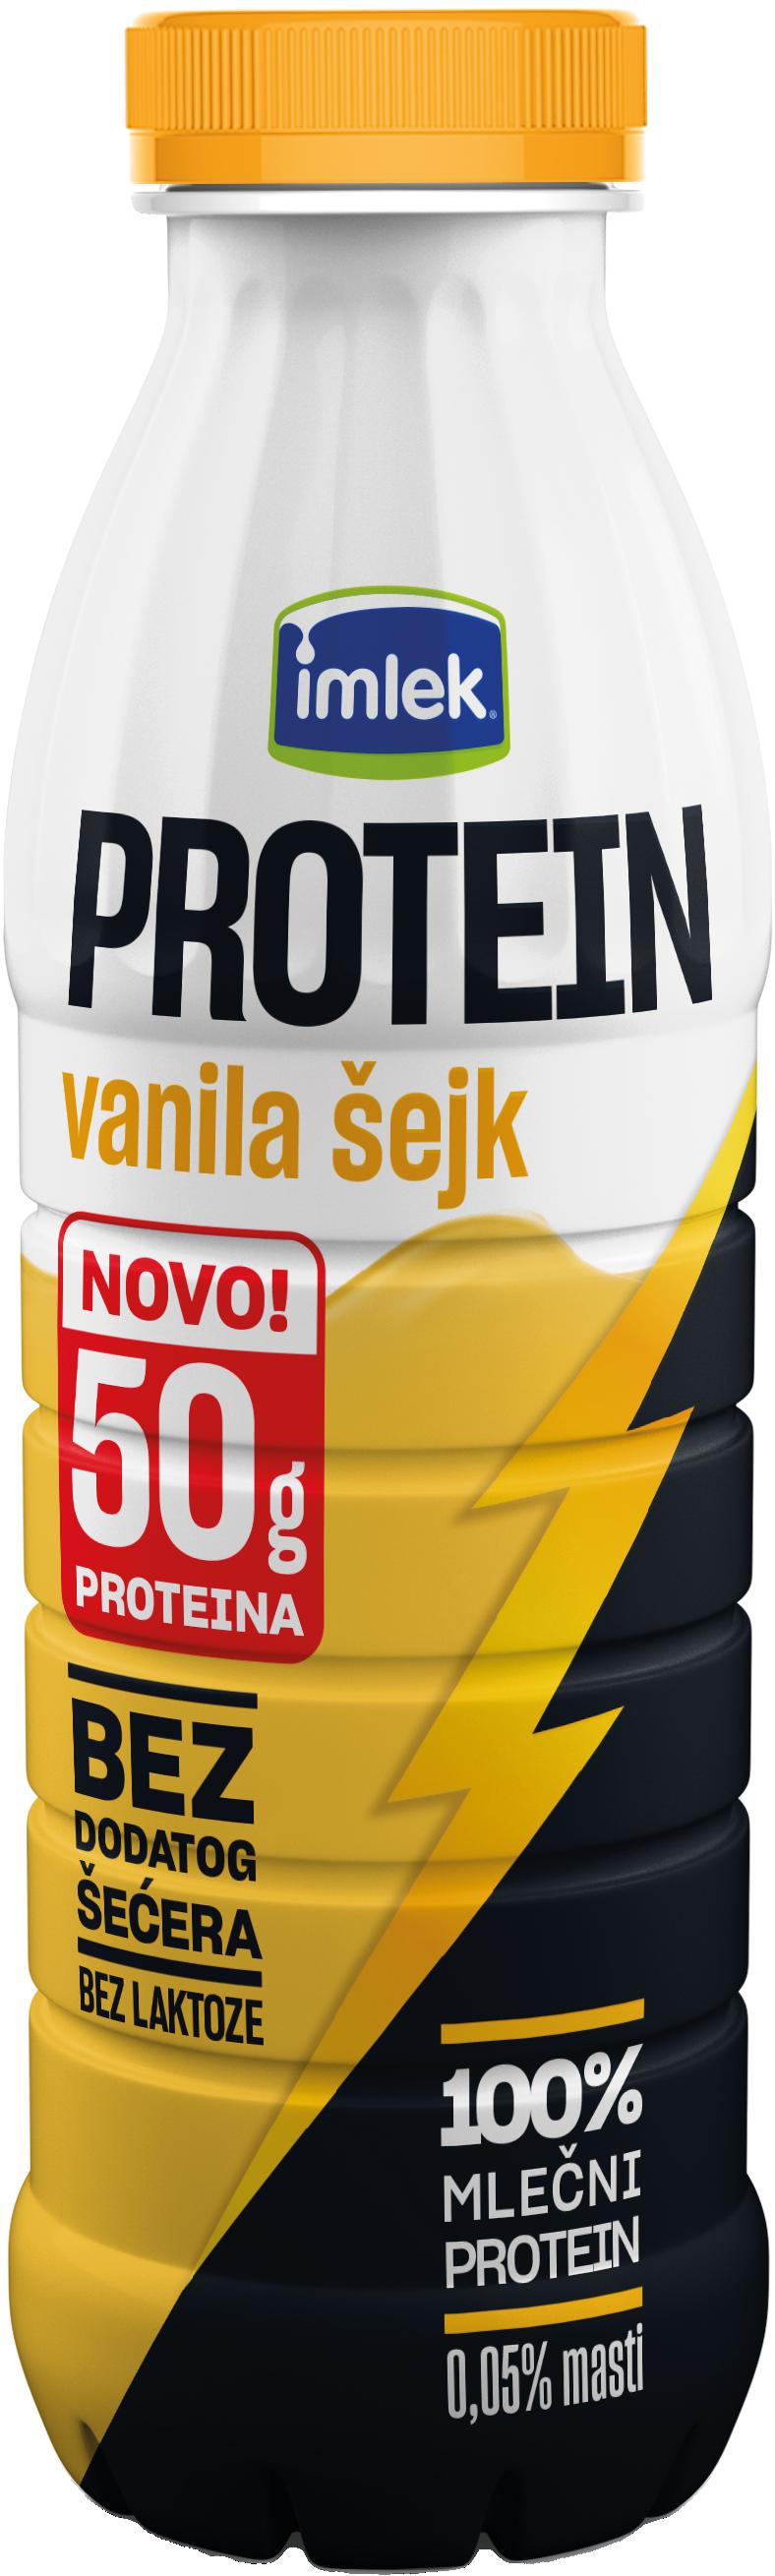 Slika za Šejk vanila protein Imlek 0.5l